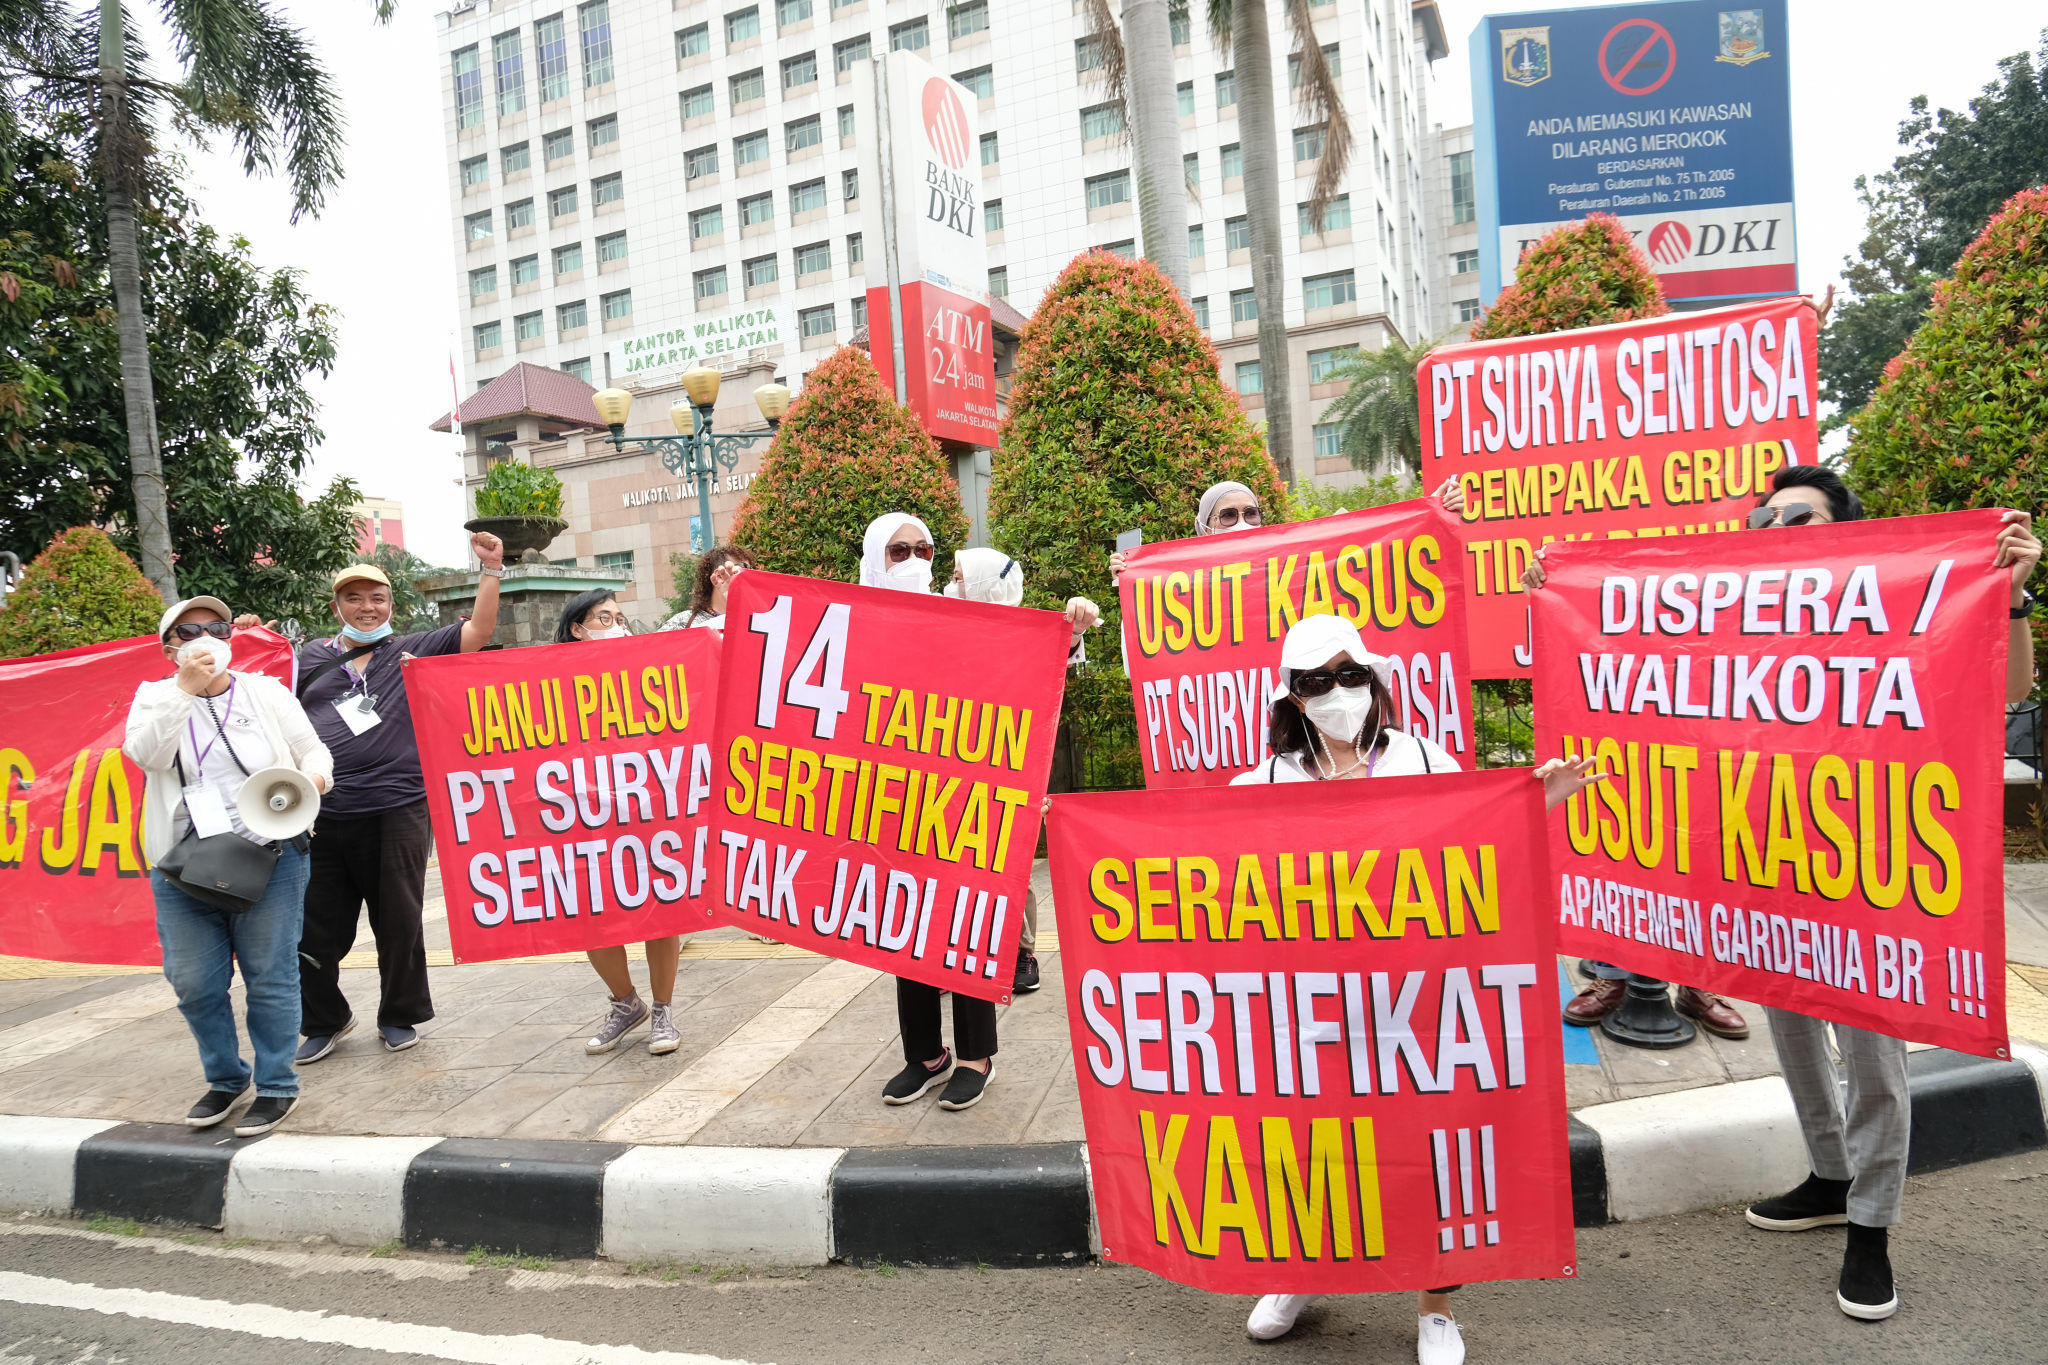 Warga pembeli apartemen Gardenia Boulevard melakukan aksi unjuk rasa damai membawa spanduk berisi tuntutan mendatangi kantor Walikota Jakarta Selatan, Rabu, 30 Maret 2022. Foto: Ismail Pohan/TrenAsia